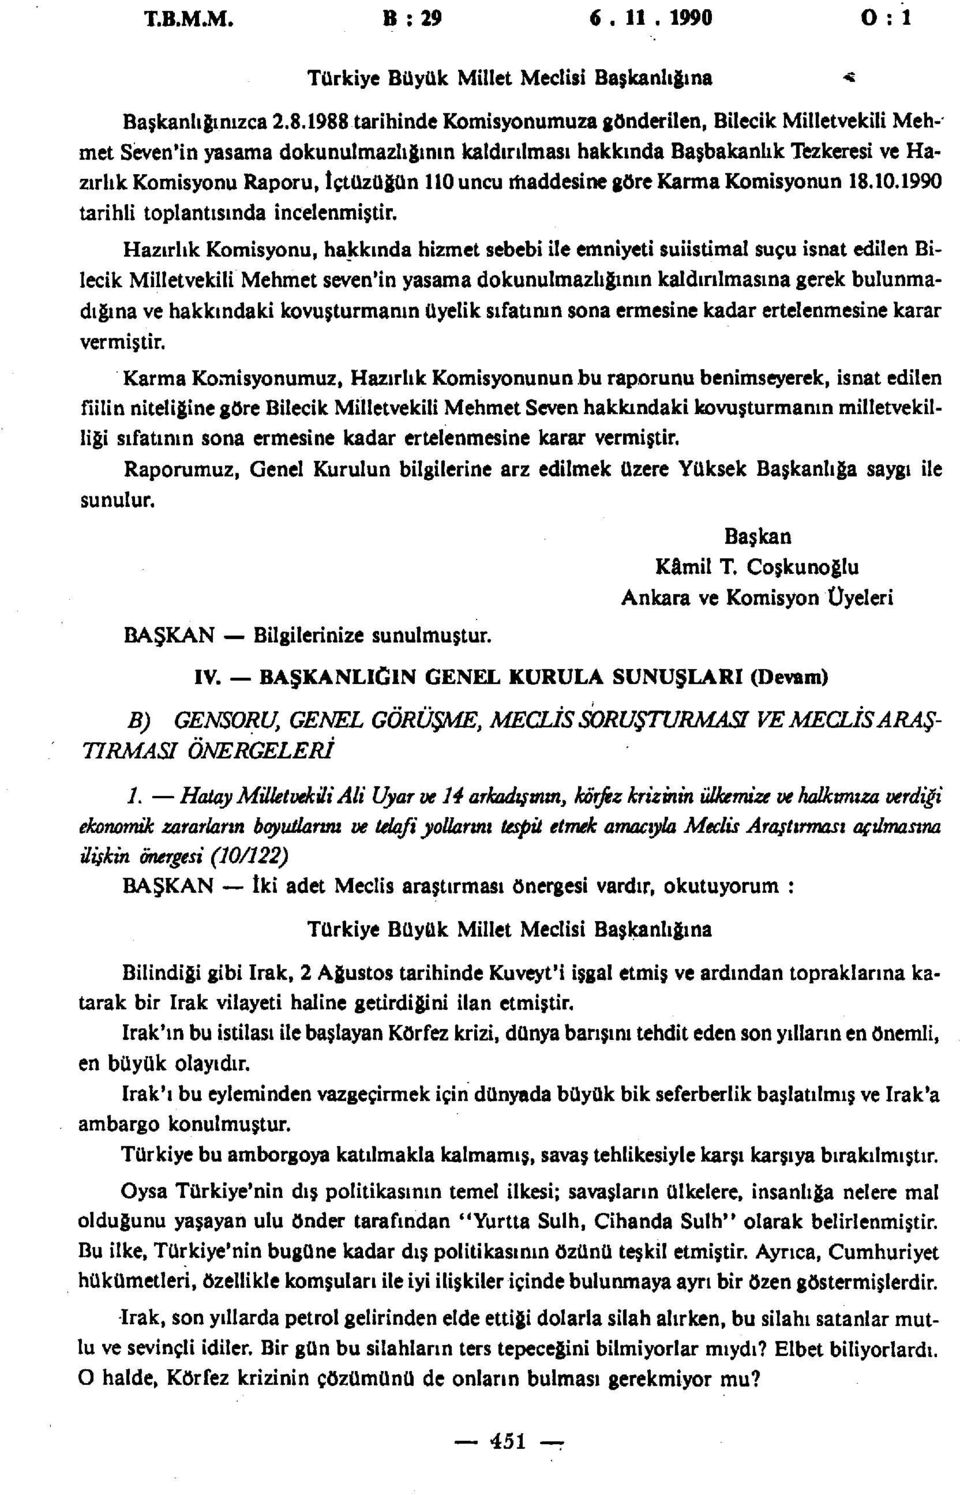 maddesine göre Karma Komisyonun 18.10.1990 tarihli toplantısında incelenmiştir.